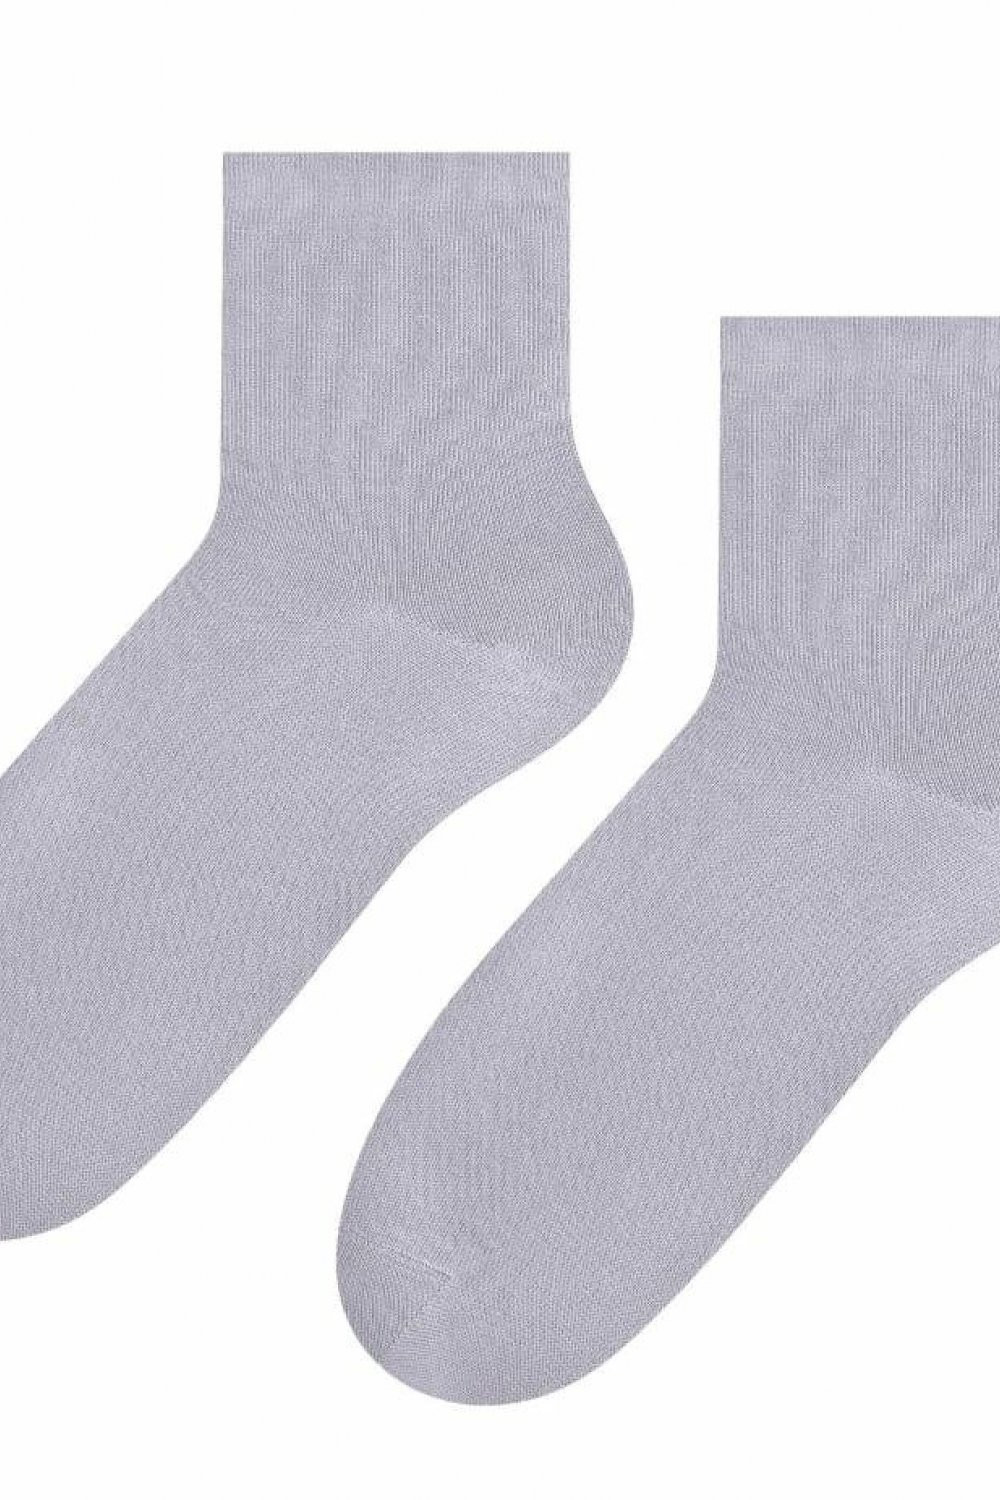 Dámské ponožky 037 grey - Steven šedá 38/40